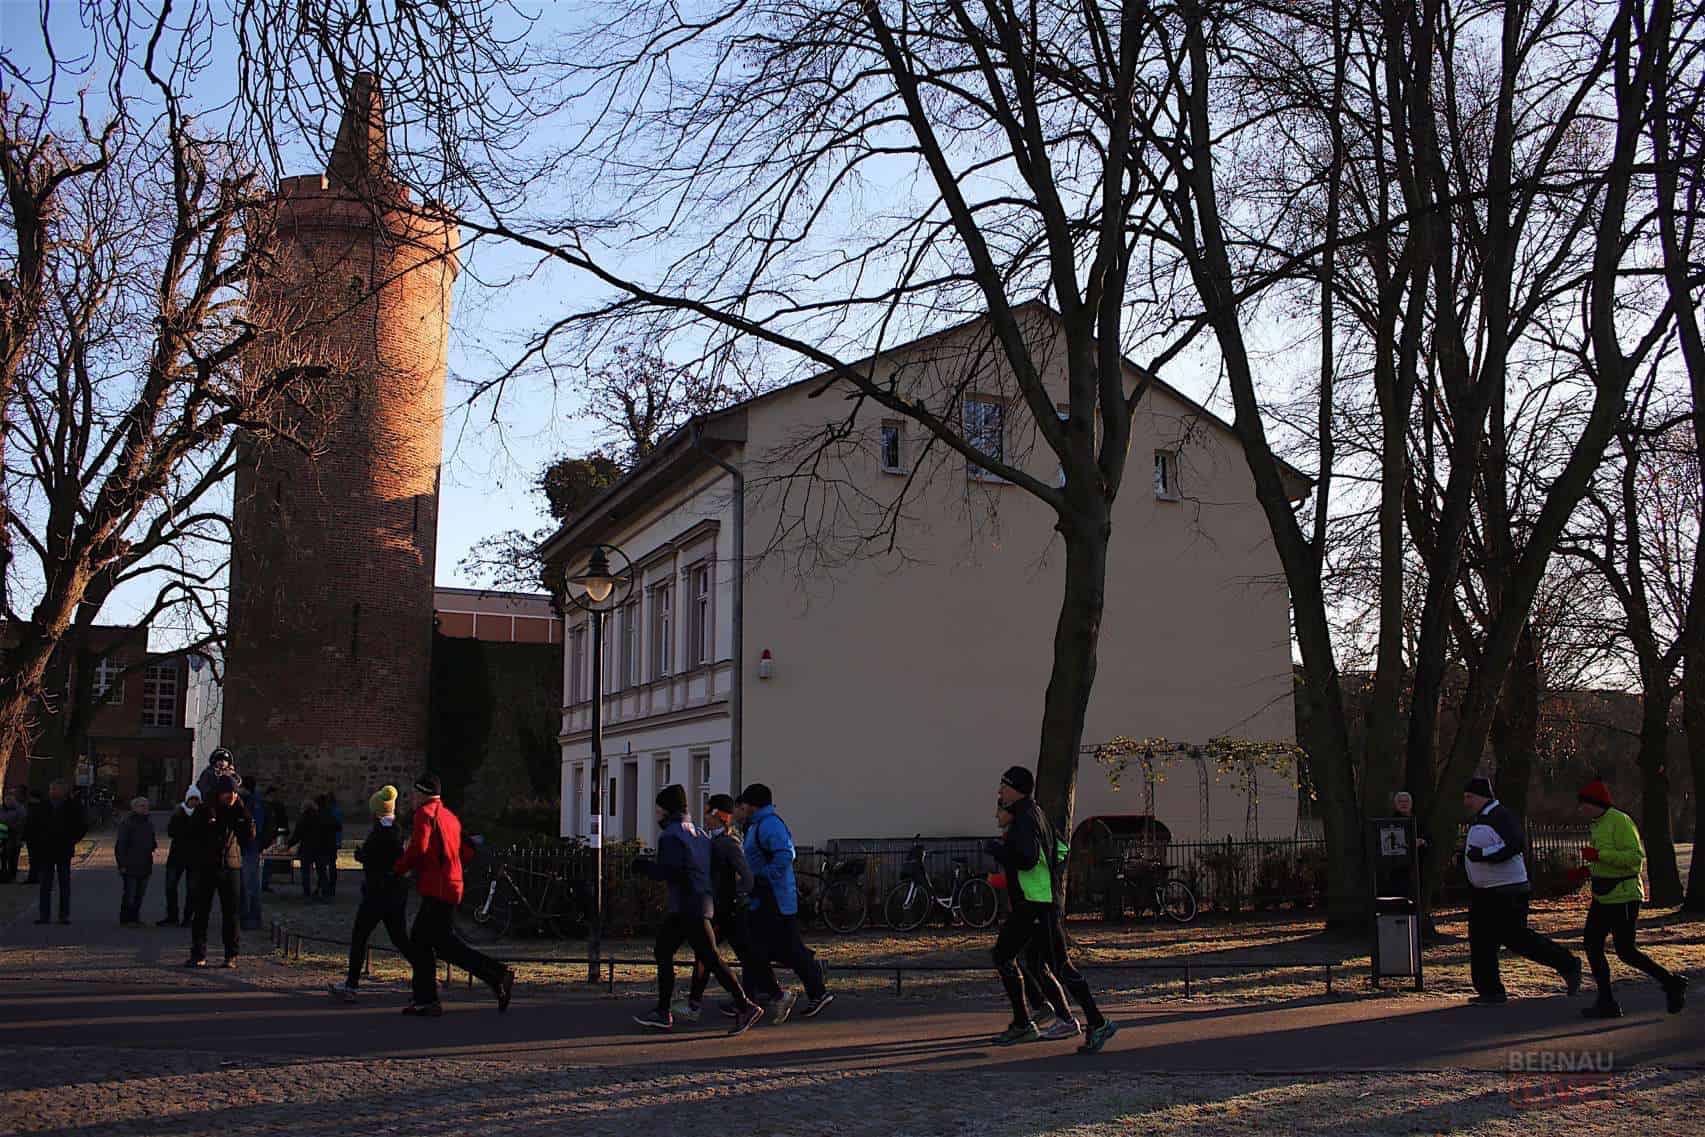 Die Stadt Bernau lädt zum Silvesterlauf durch den Bernauer Stadtpark